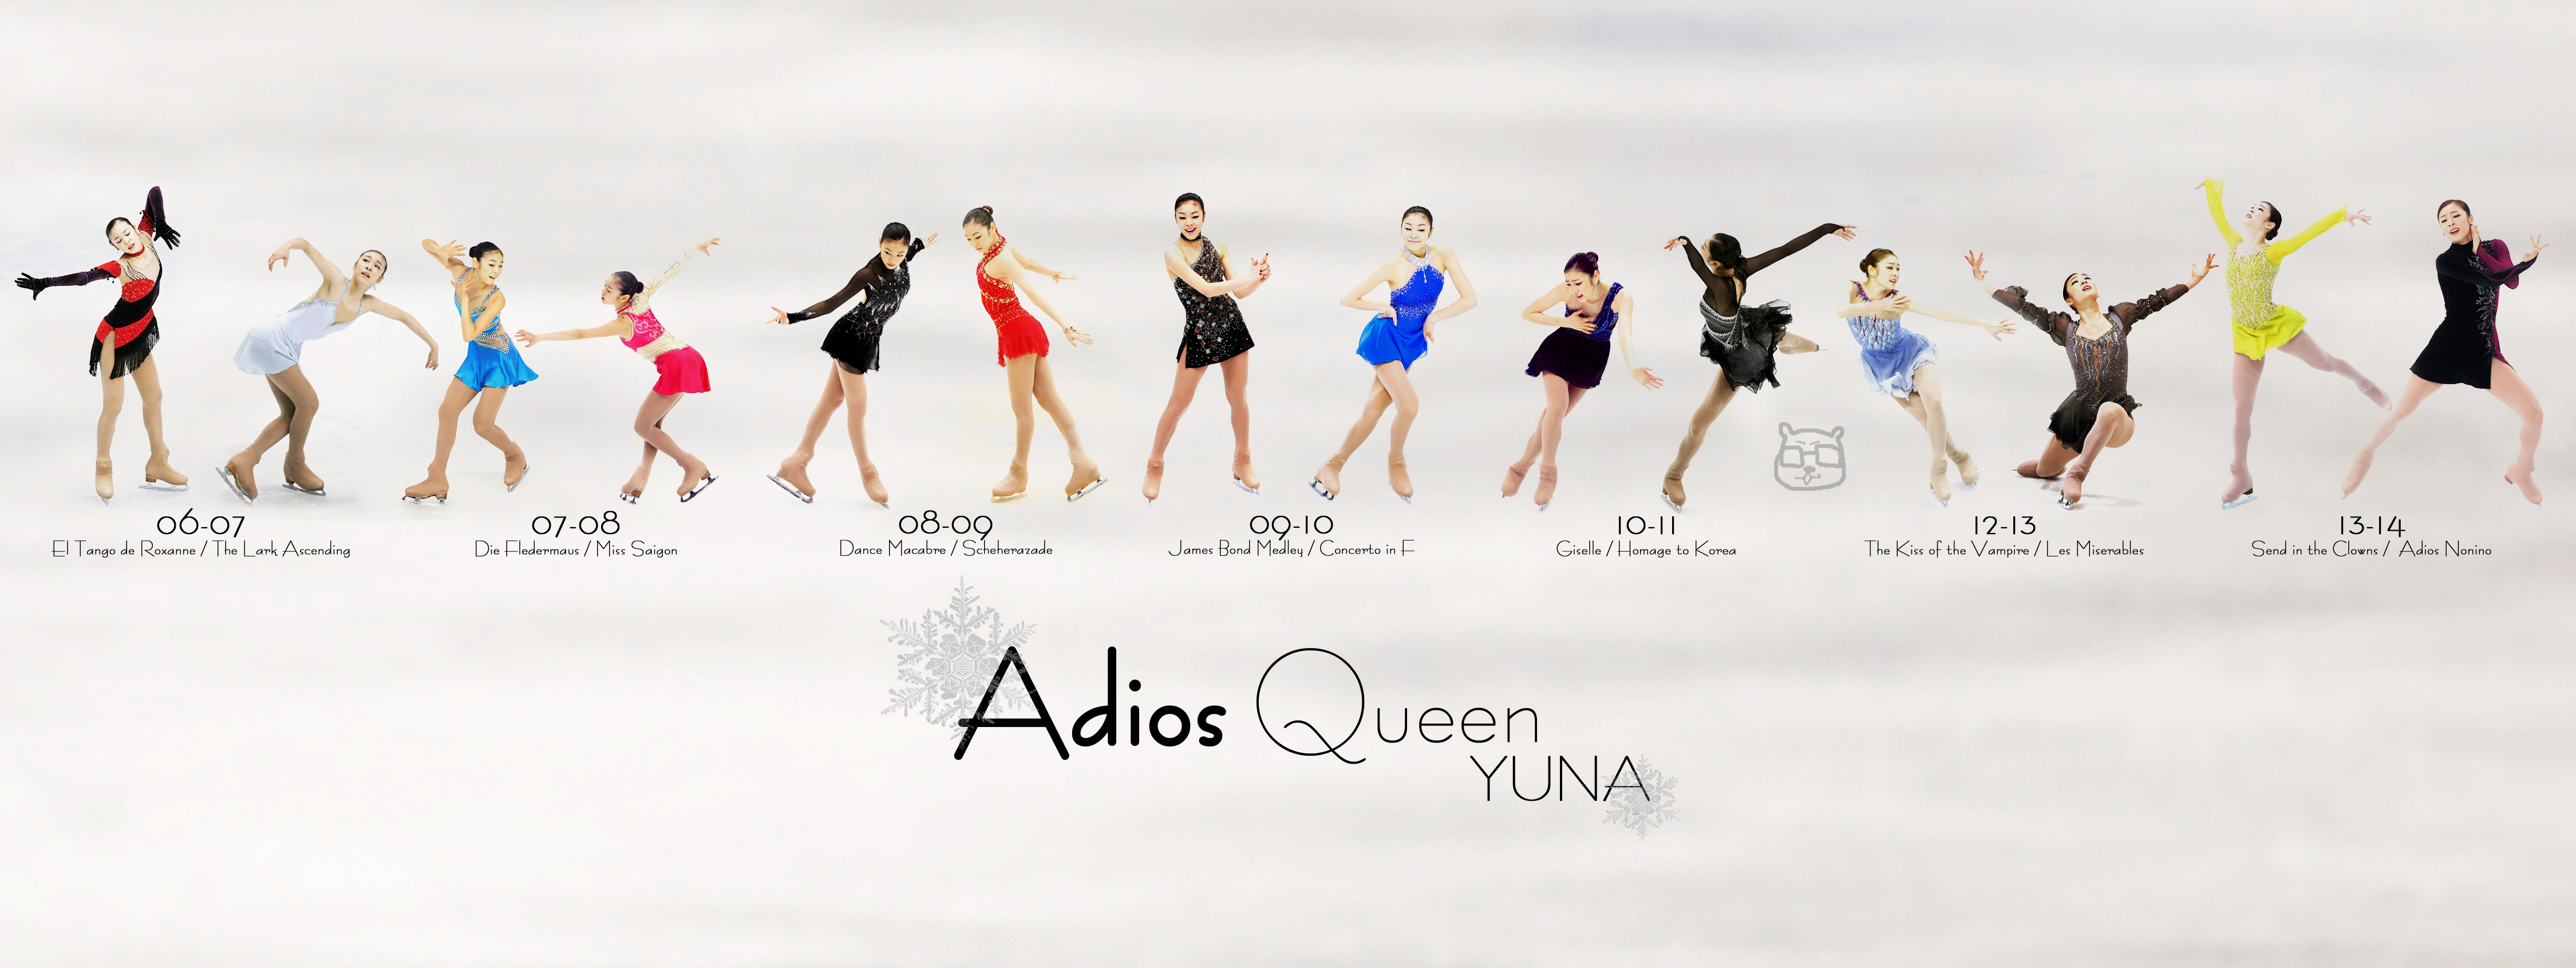 adios queen yuna_O.jpg